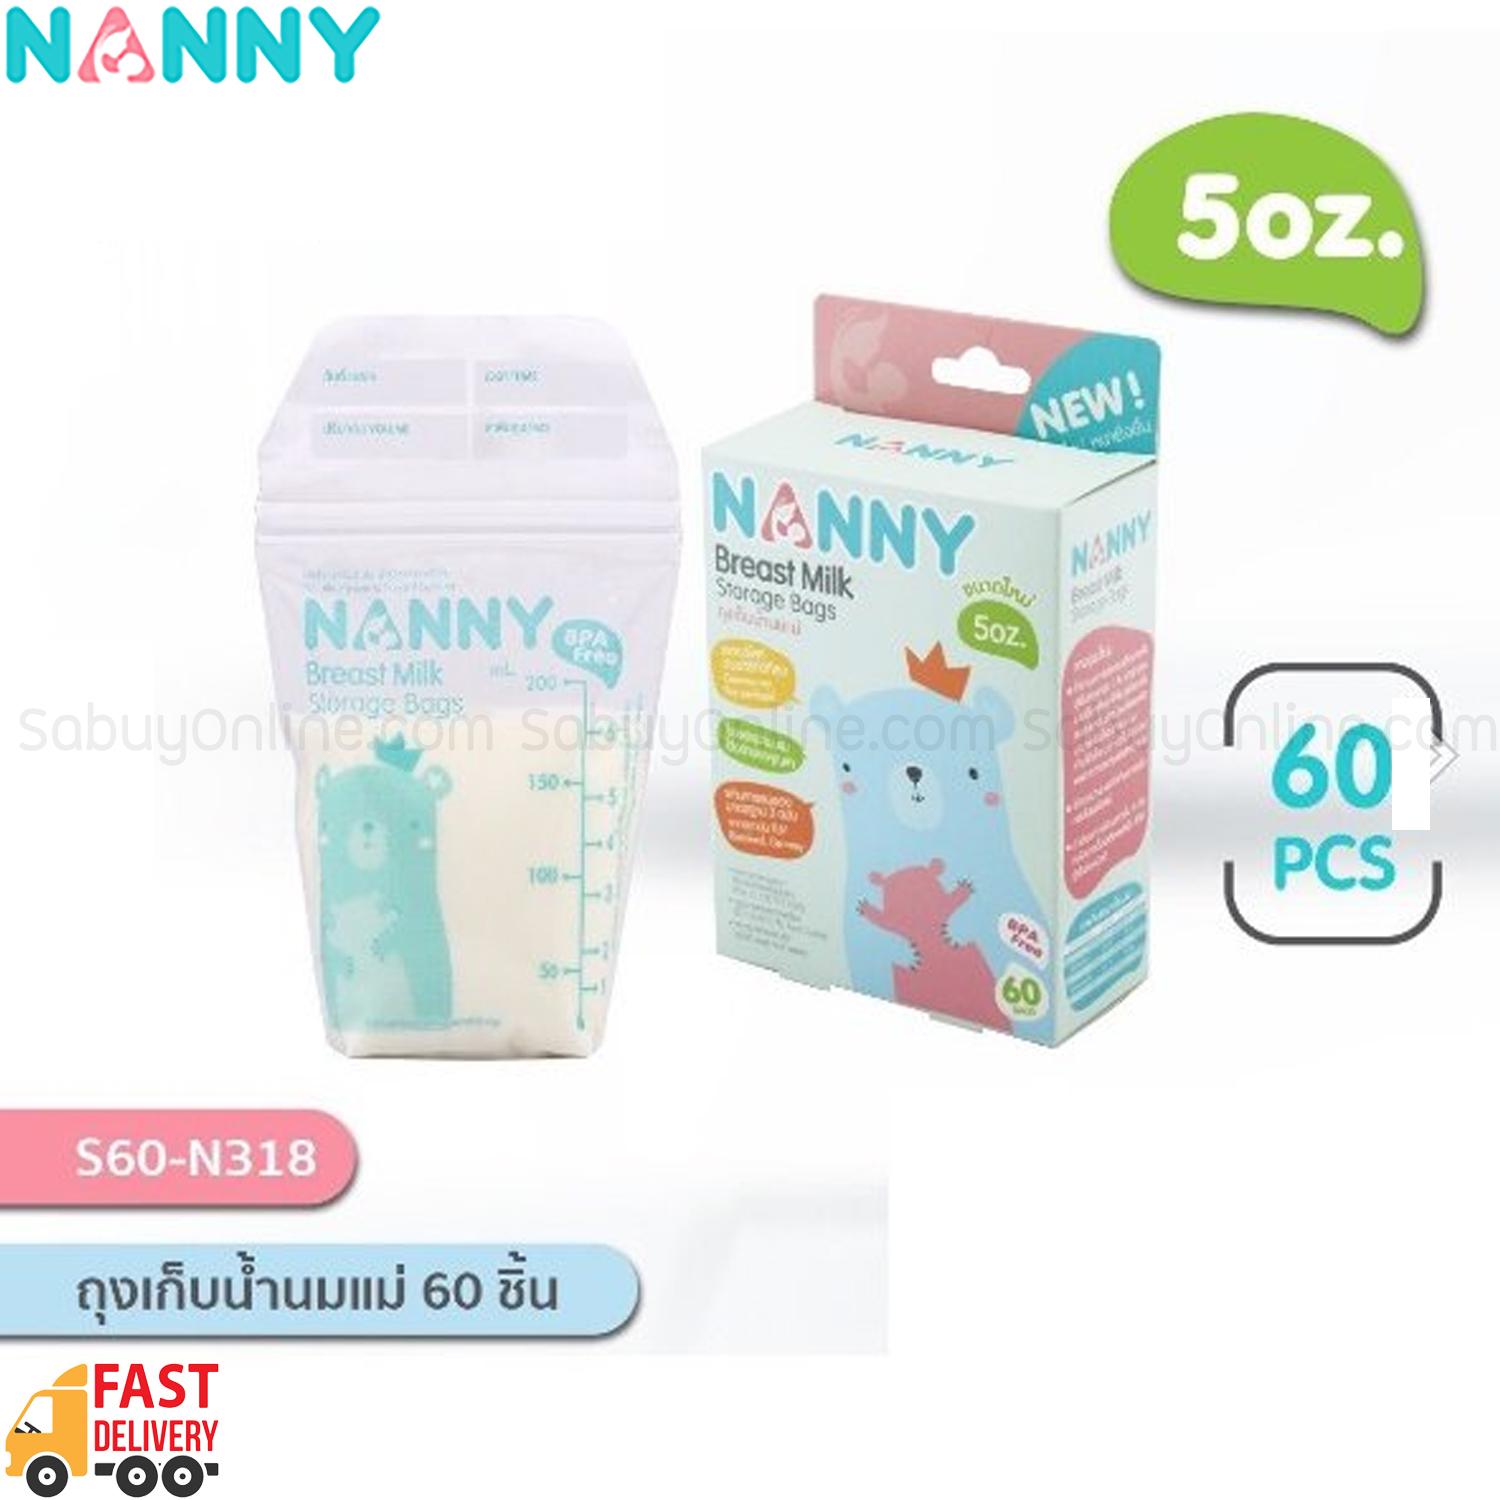 NANNY ถุงเก็บน้ำนมแม่ 60 ชิ้น ขนาด 5 ออนซ์